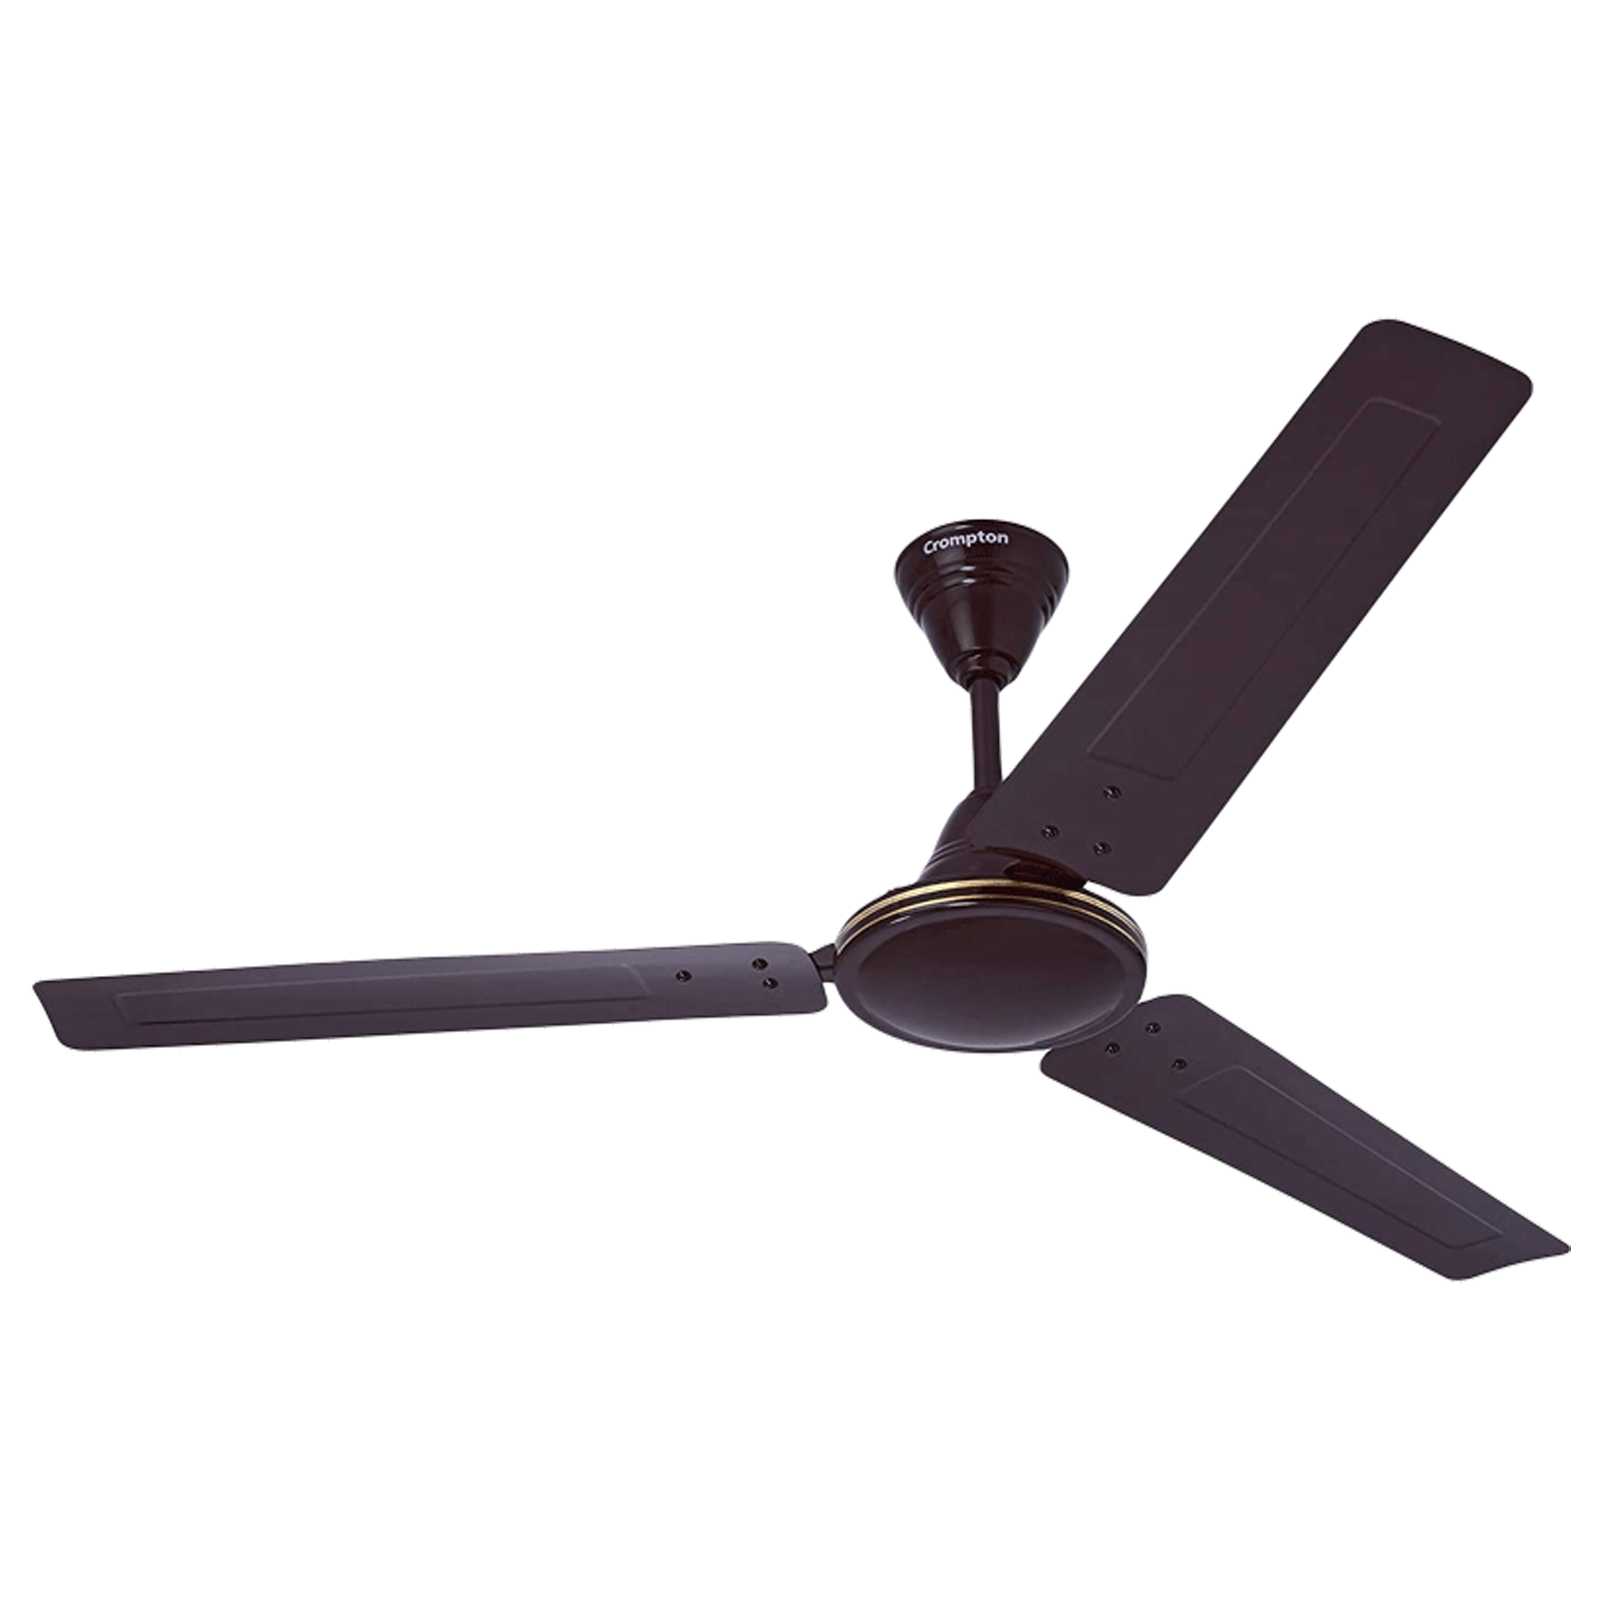 Crompton Cool Breeze 120 Sweep 3 Blade Ceiling Fan (4 Speed Settings, CFSBCLB48LBN1S, Lustier Brown)